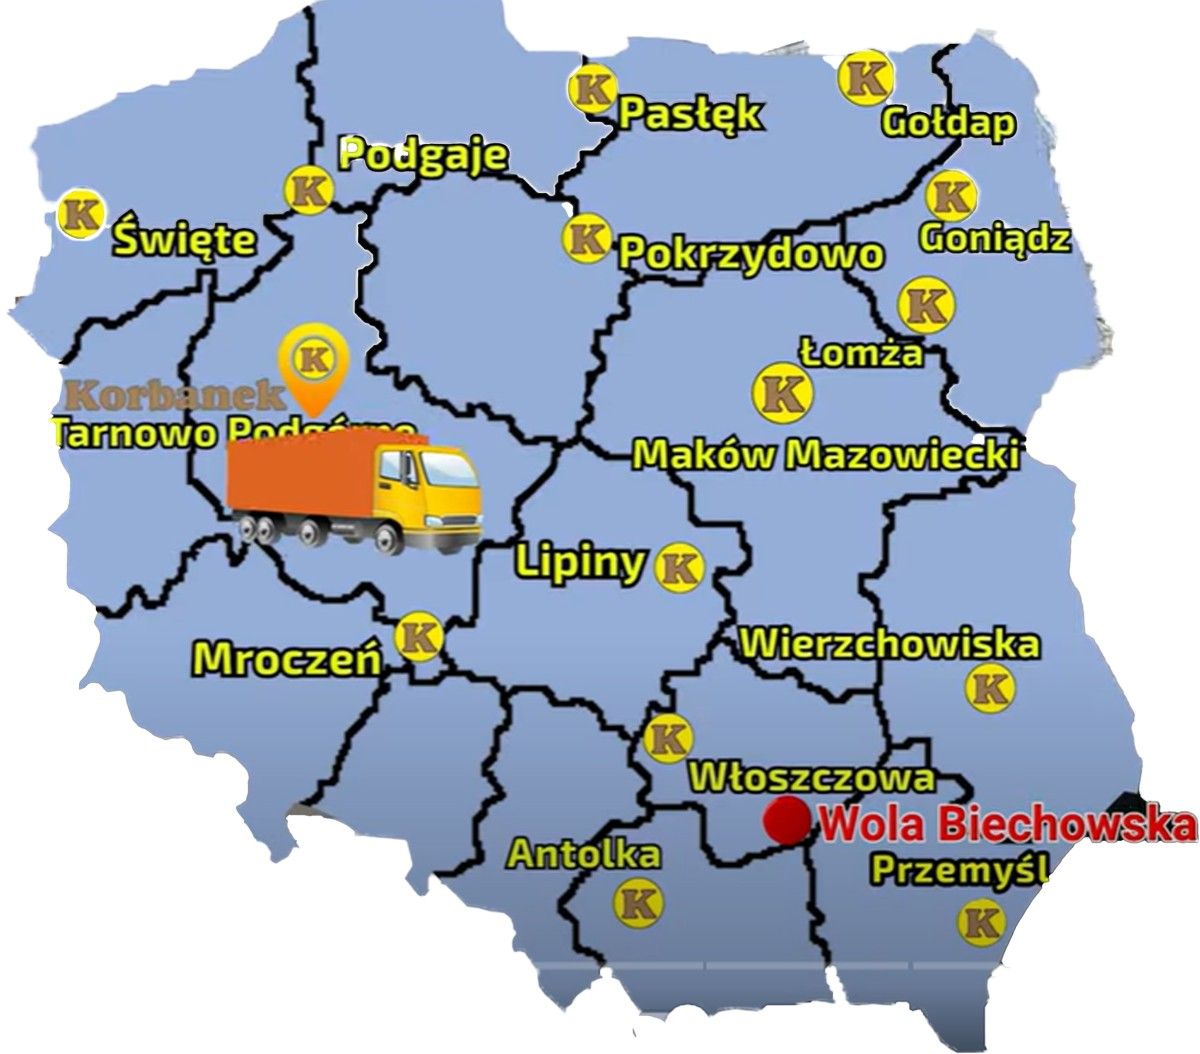 Mapa punktów sprzedazy  sieci Korbanek z zazanaczona miejscowością gdzie nastapiła dostawa Monosema